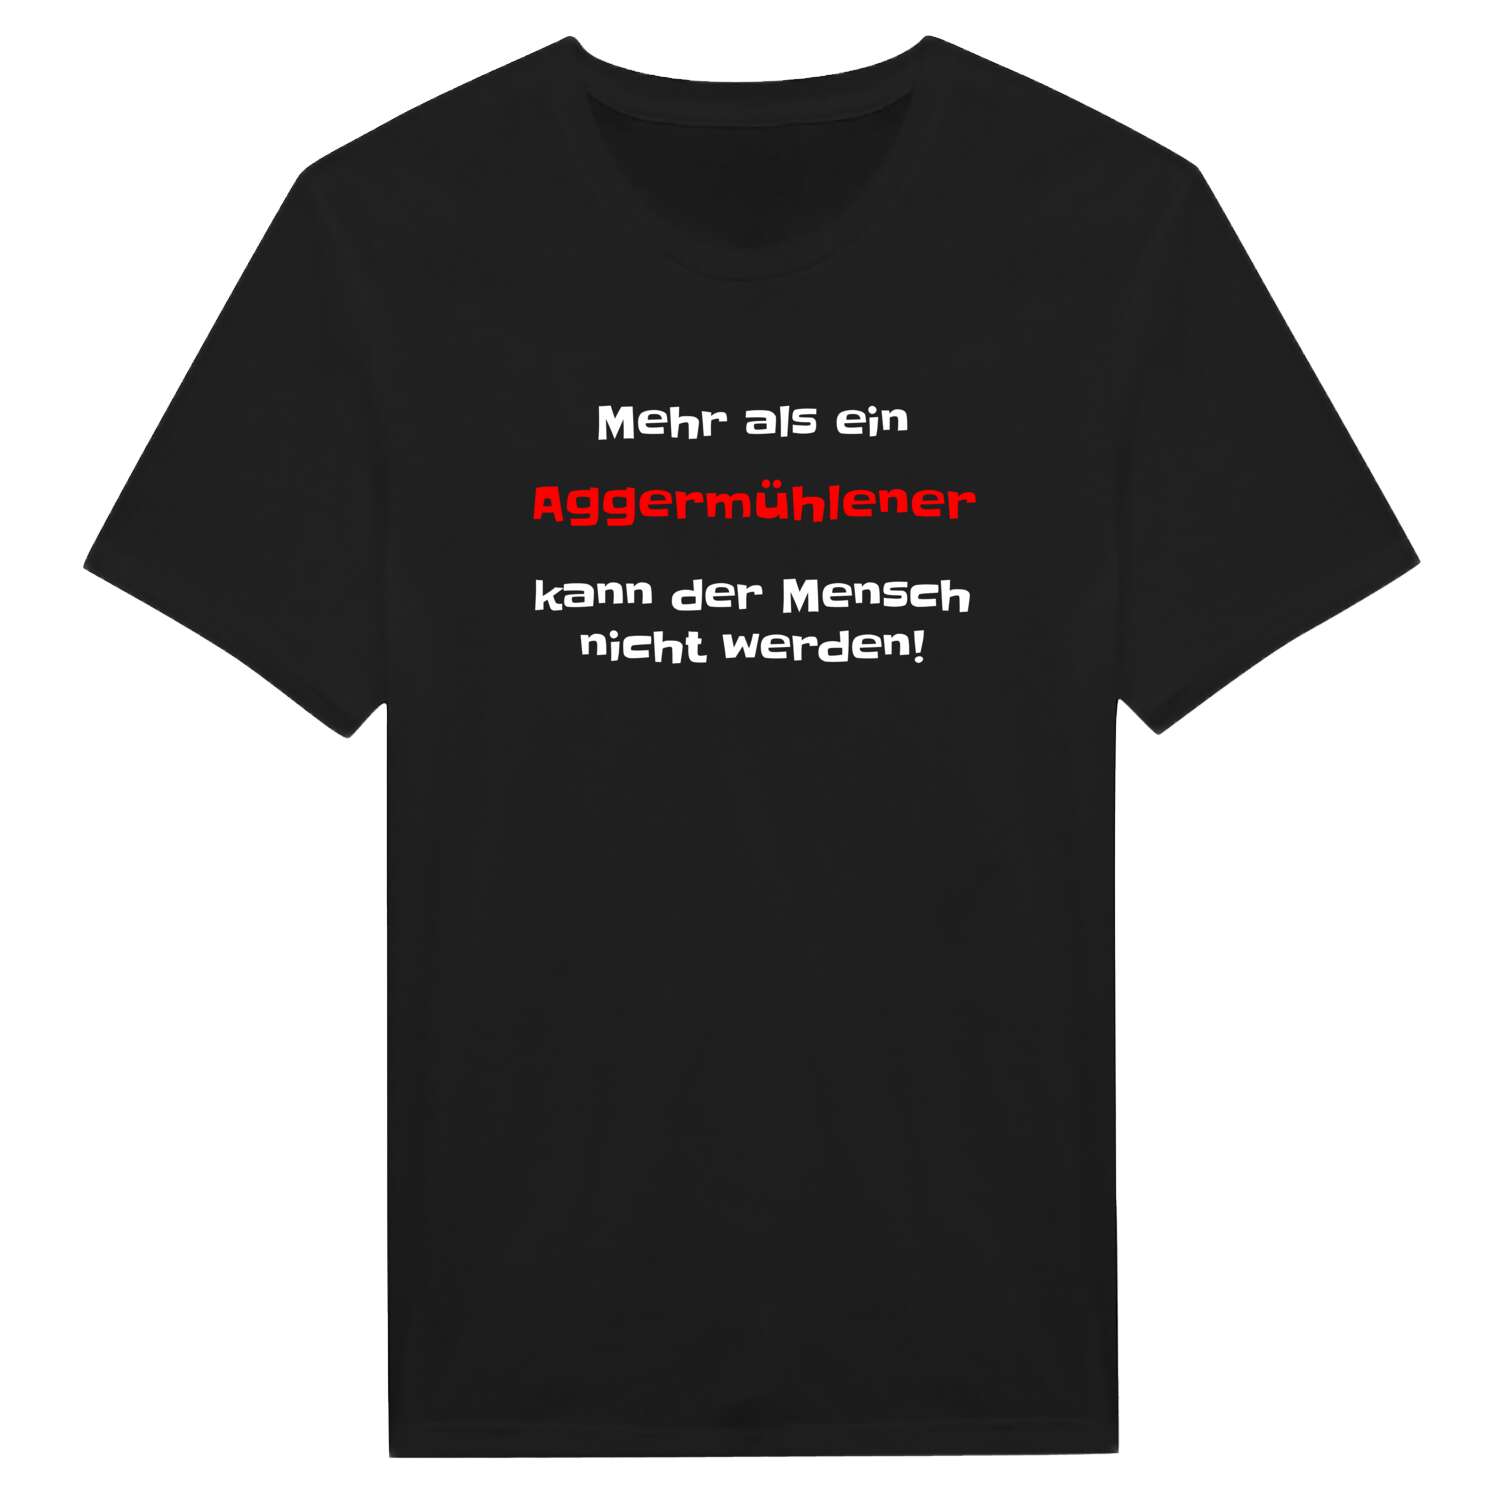 Aggermühle T-Shirt »Mehr als ein«